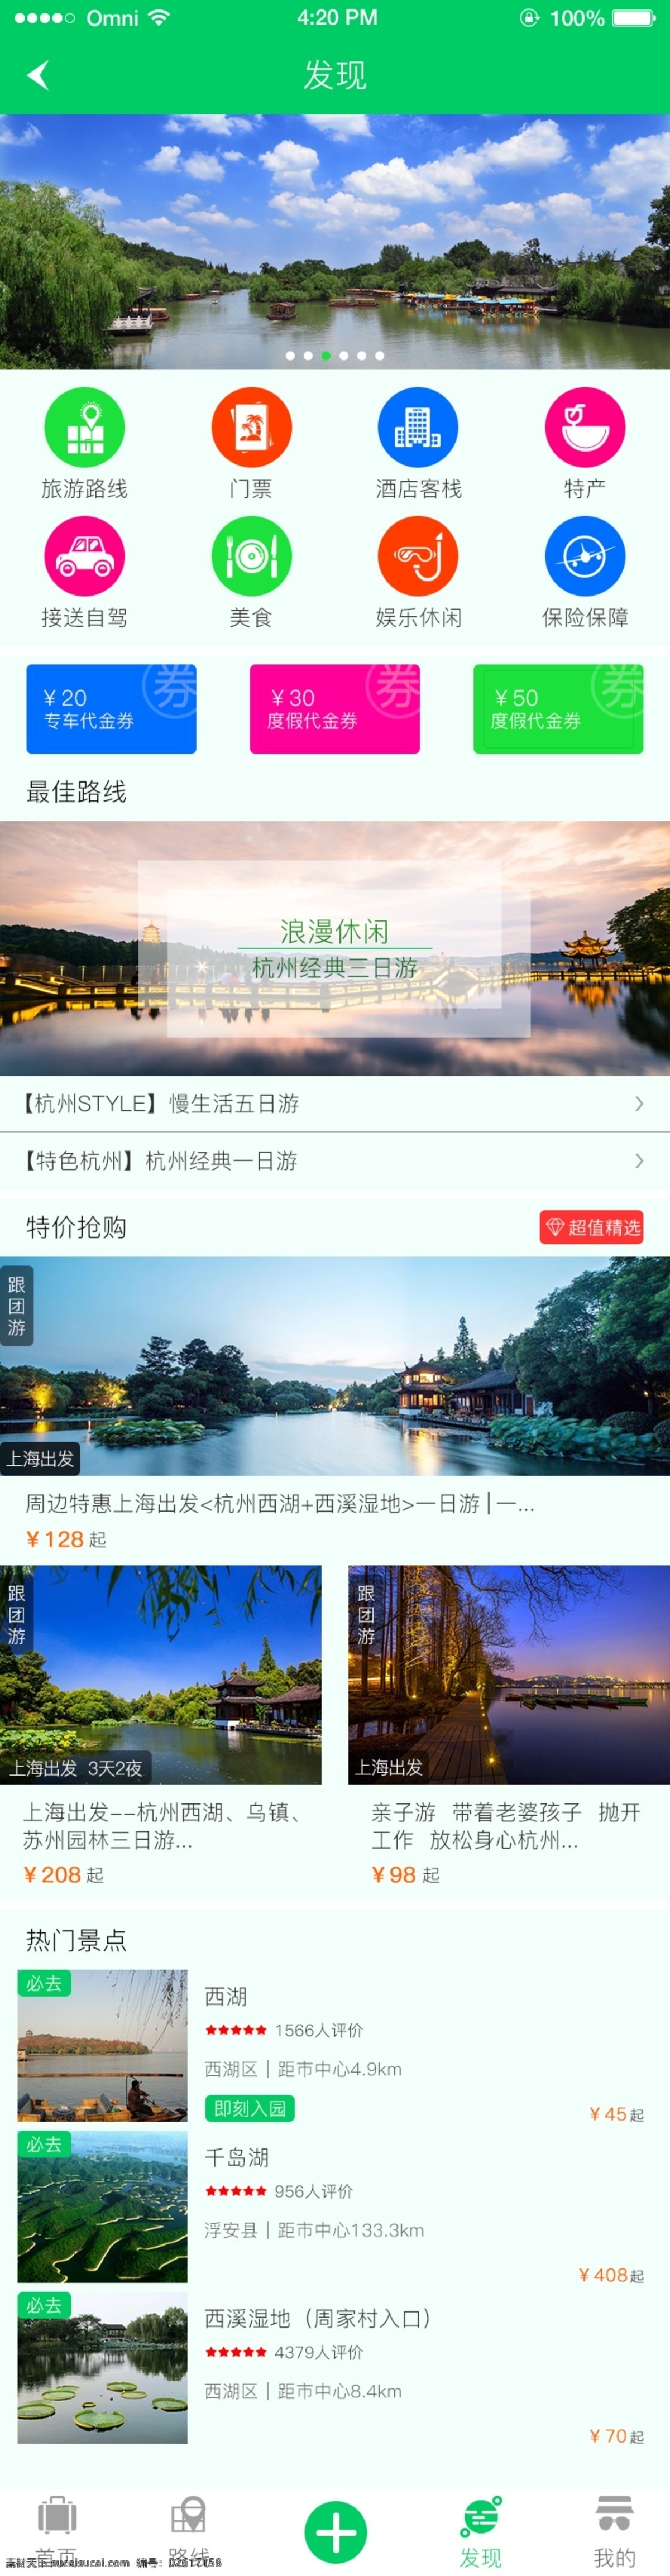 旅游 发现 app 页面 界面 简洁